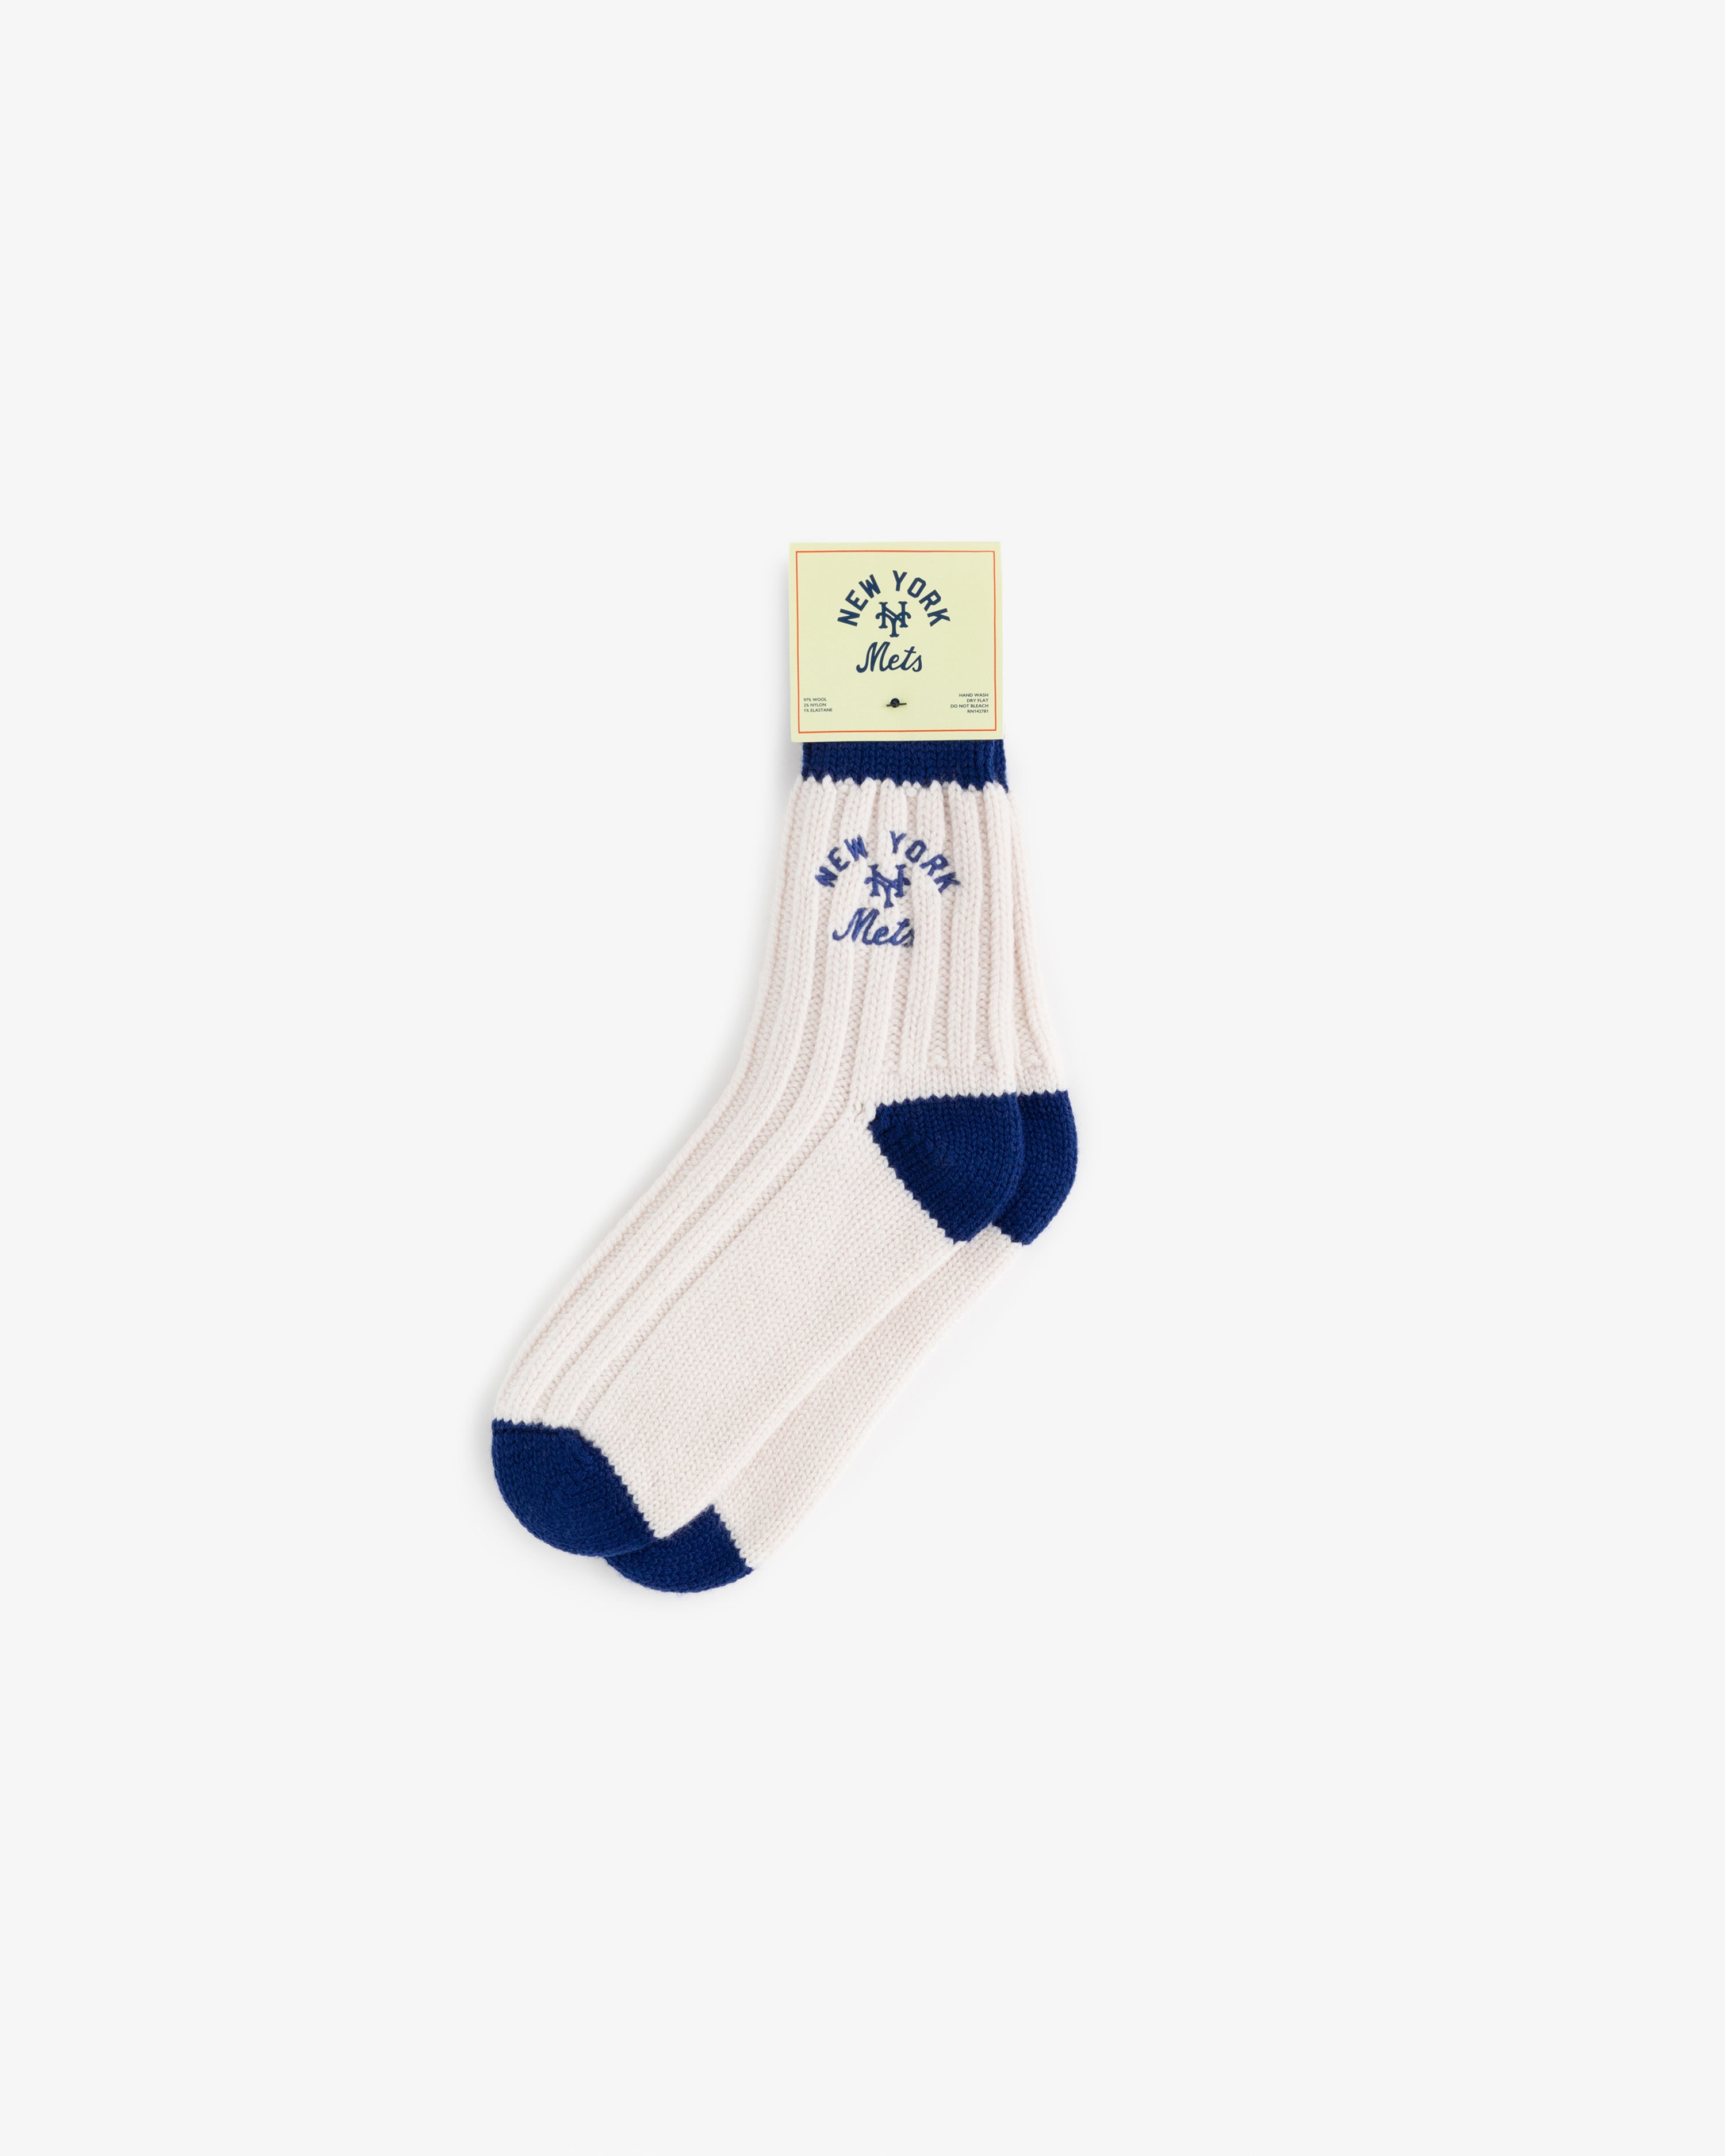 ALD / New York Mets Sock